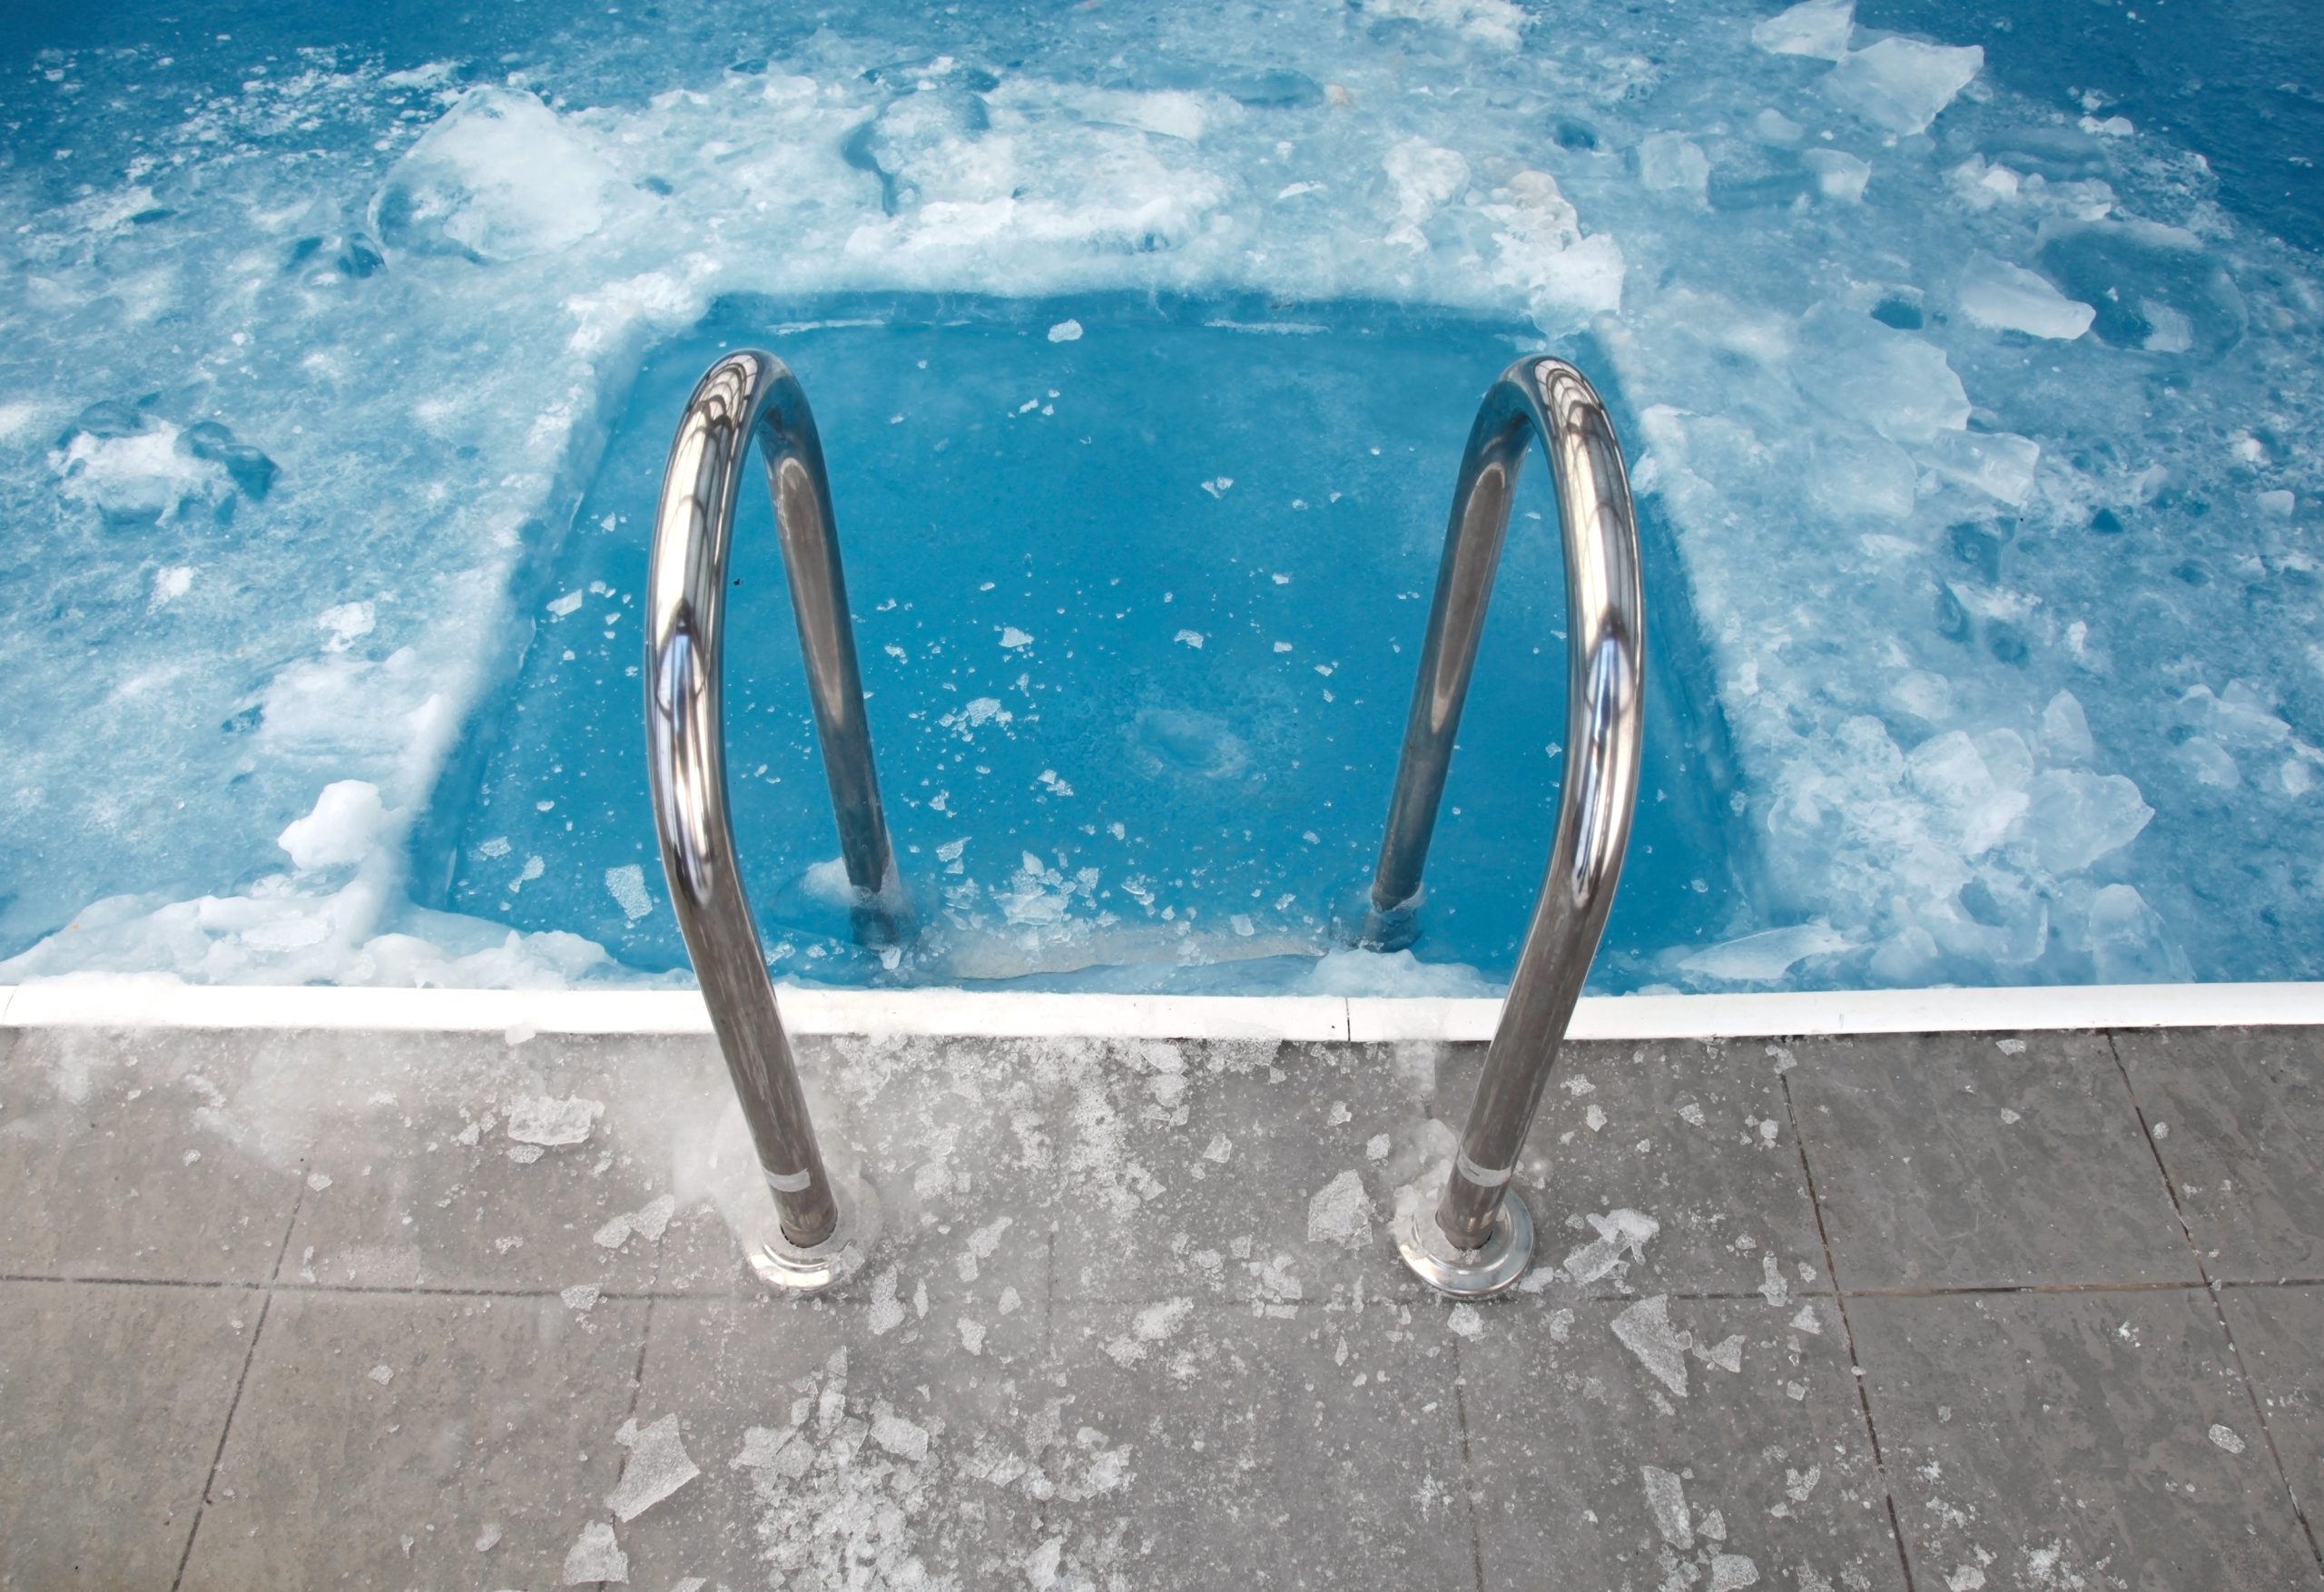 Winterafdekking voor een zwembad: hoe moet ik kiezen?